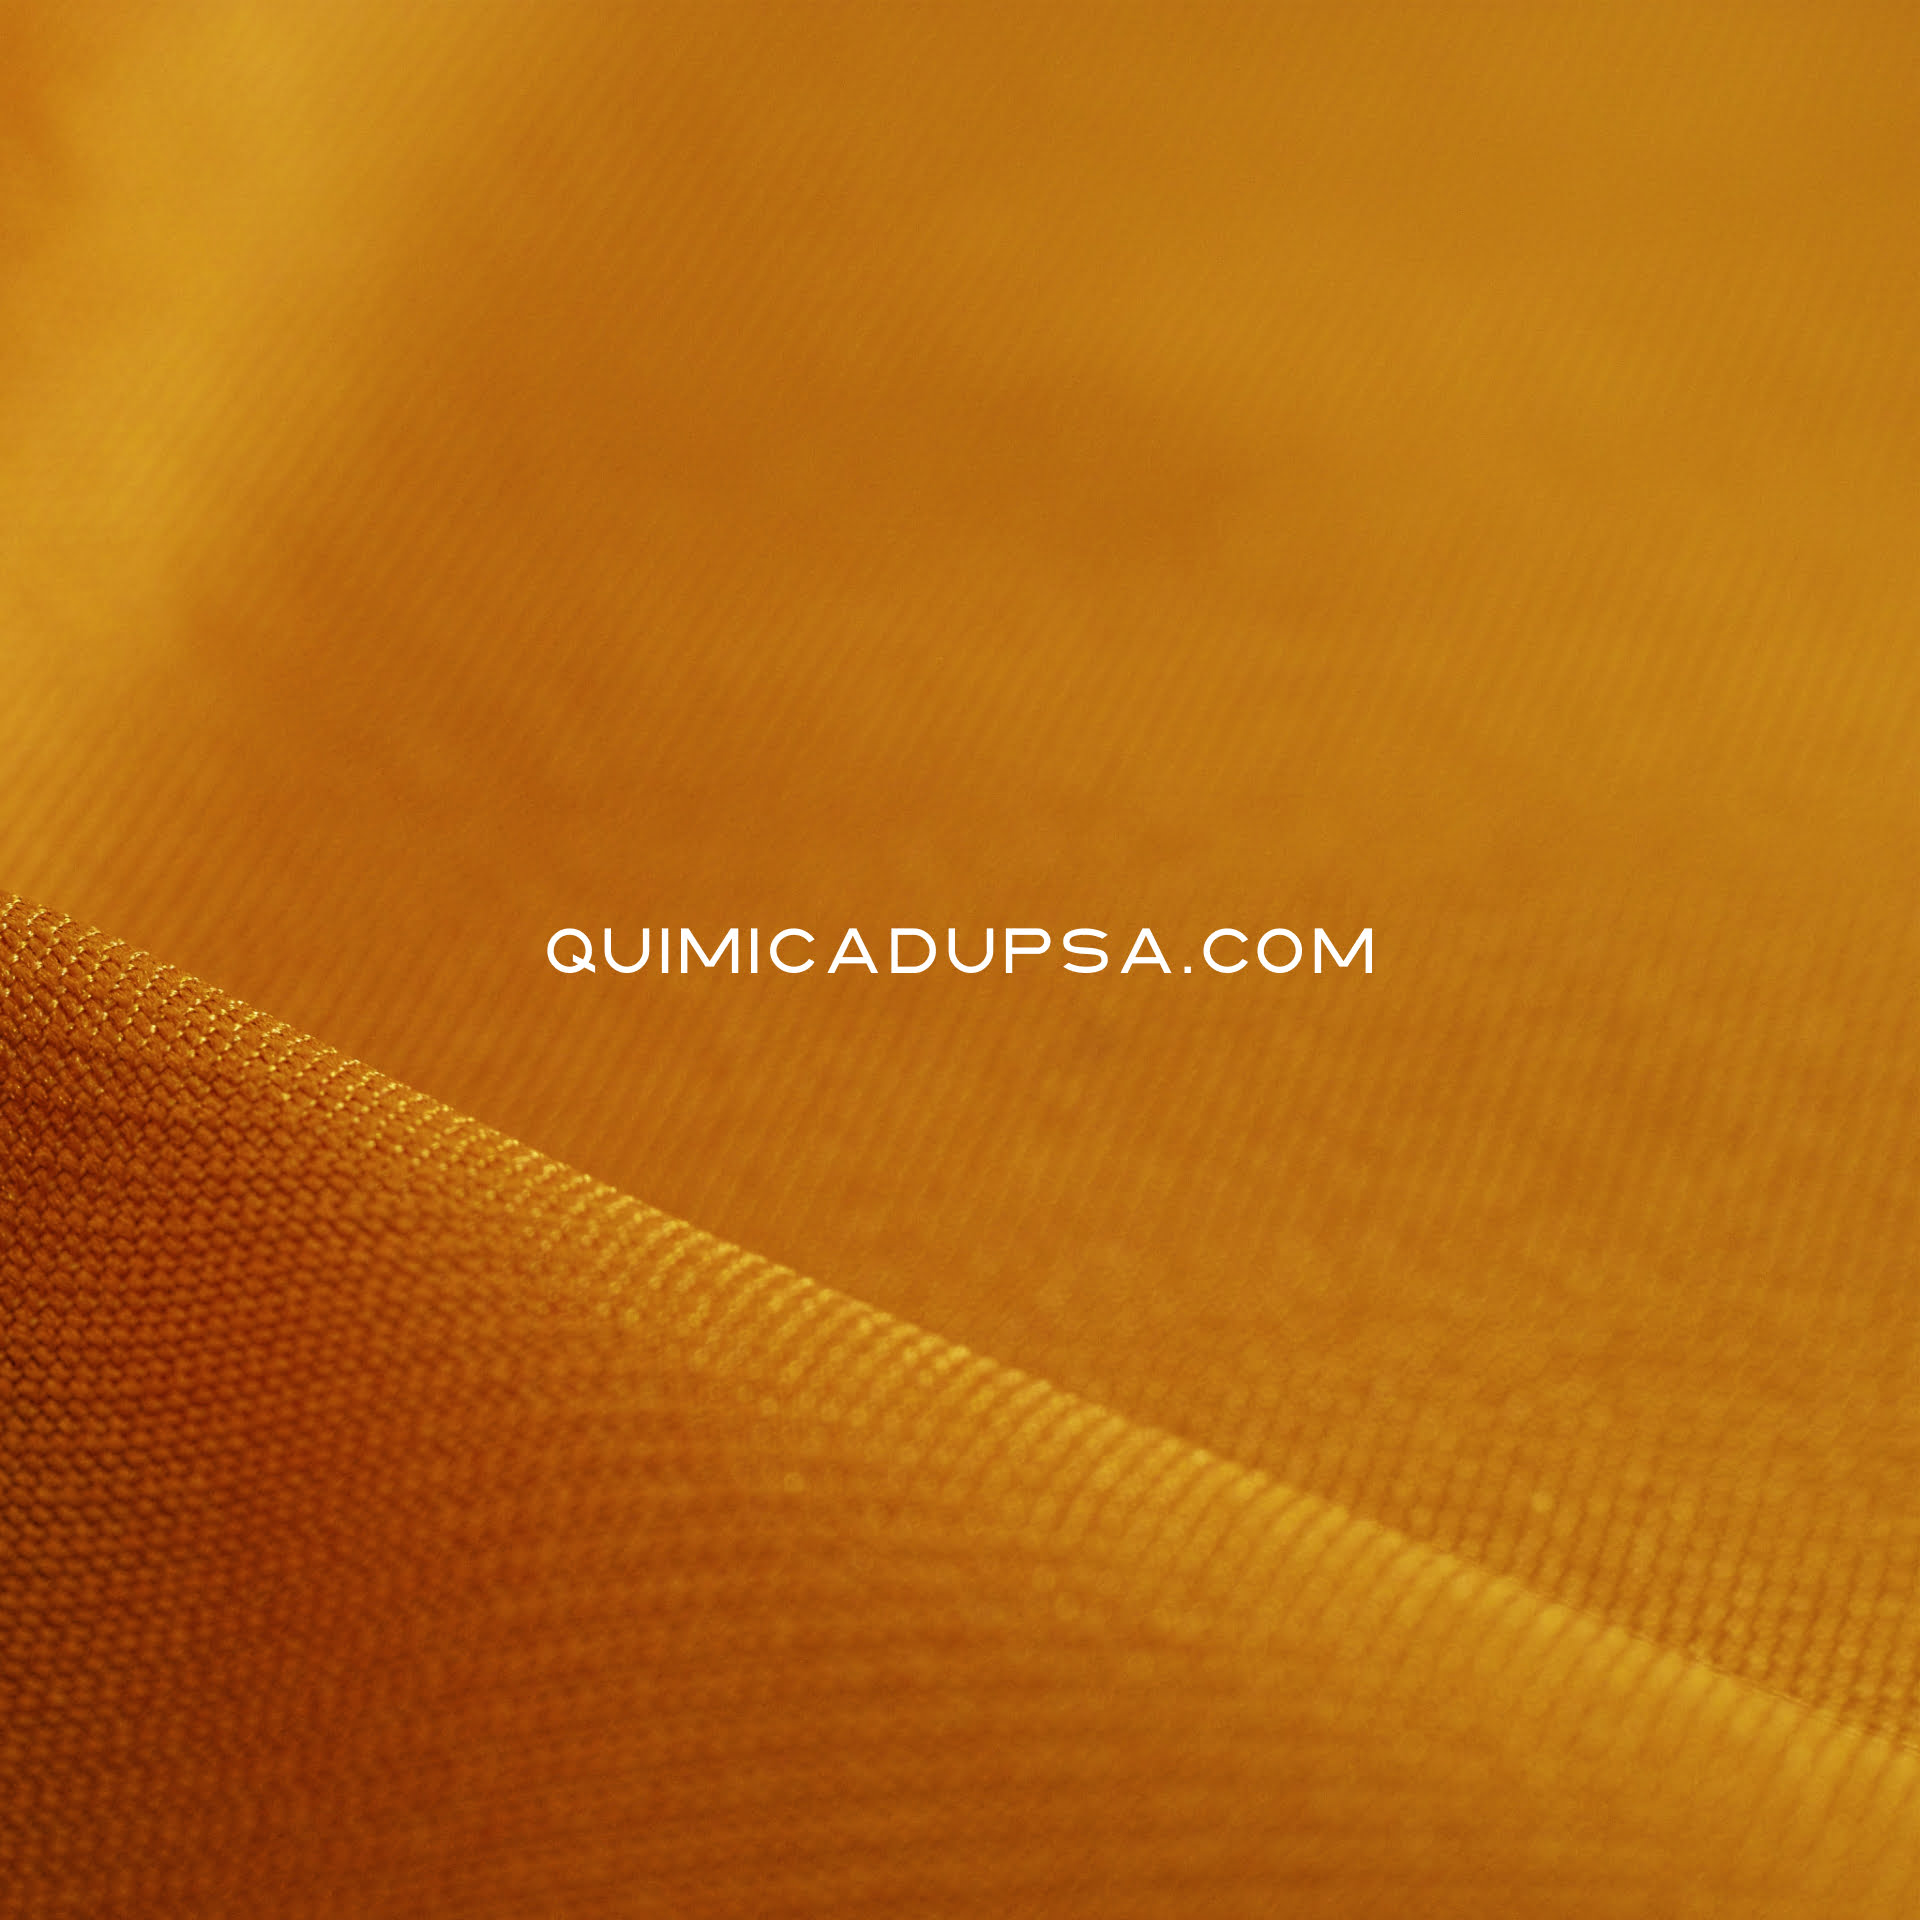 qd-ad-pigmentos-textiles 5